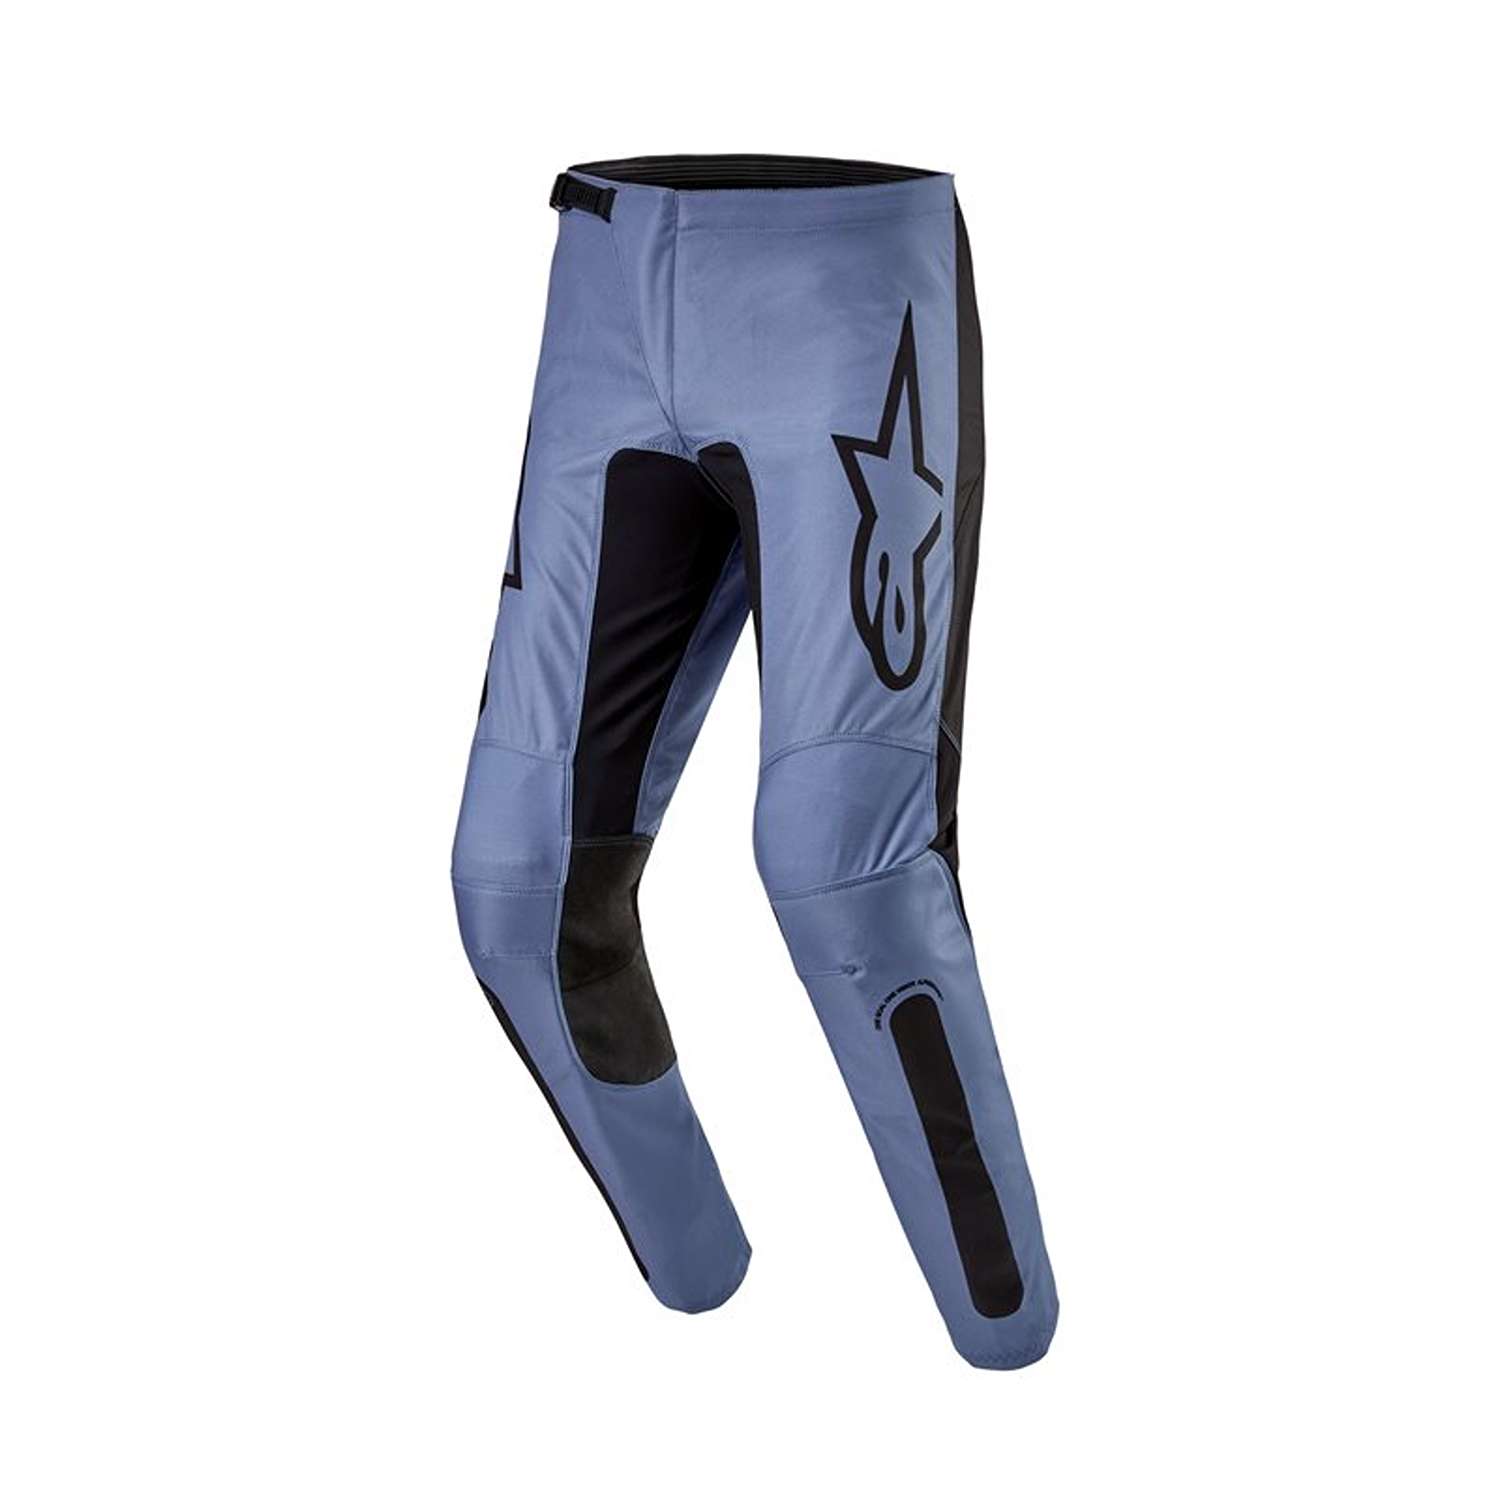 Image of Alpinestars Fluid Lurv Pants Light Blue Black Size 40 ID 8059347265261